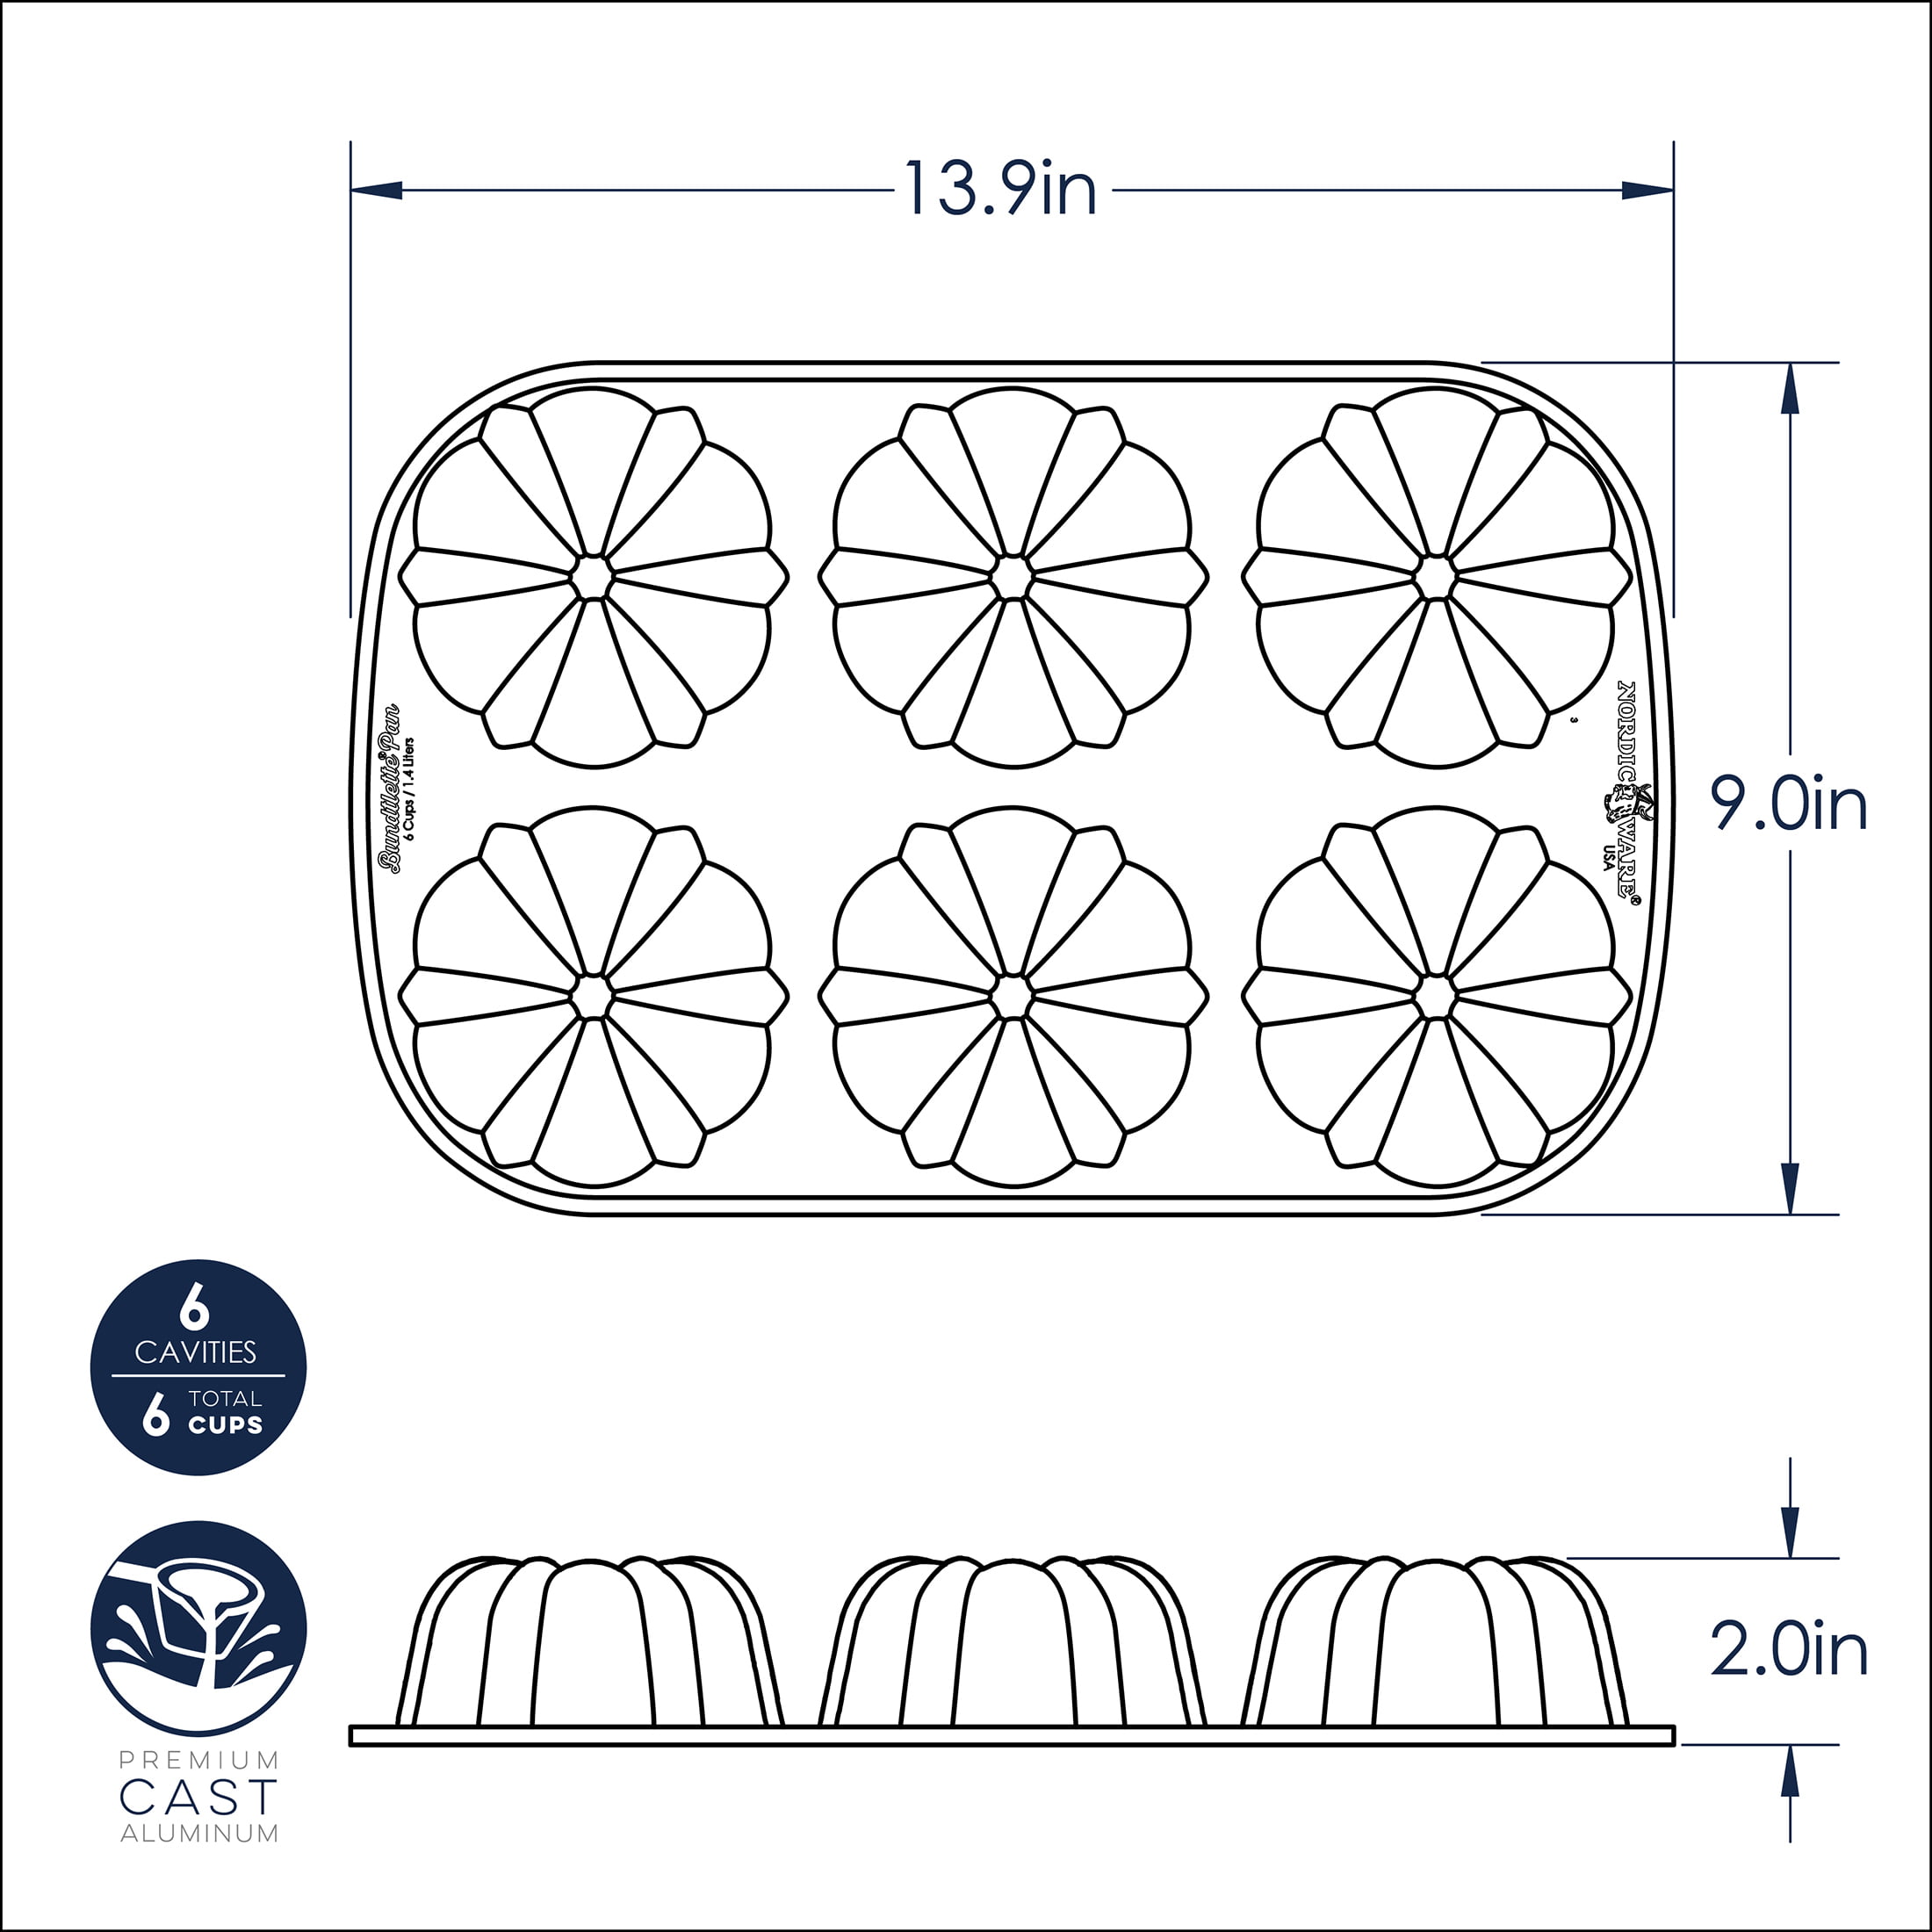 Nordic Ware Original Bundtlette 9 3/8 x 13 3/8 x 1 5/16 12-Compartment Non-Stick Cast Aluminum Bundtlette Mini Cake Pan 52802